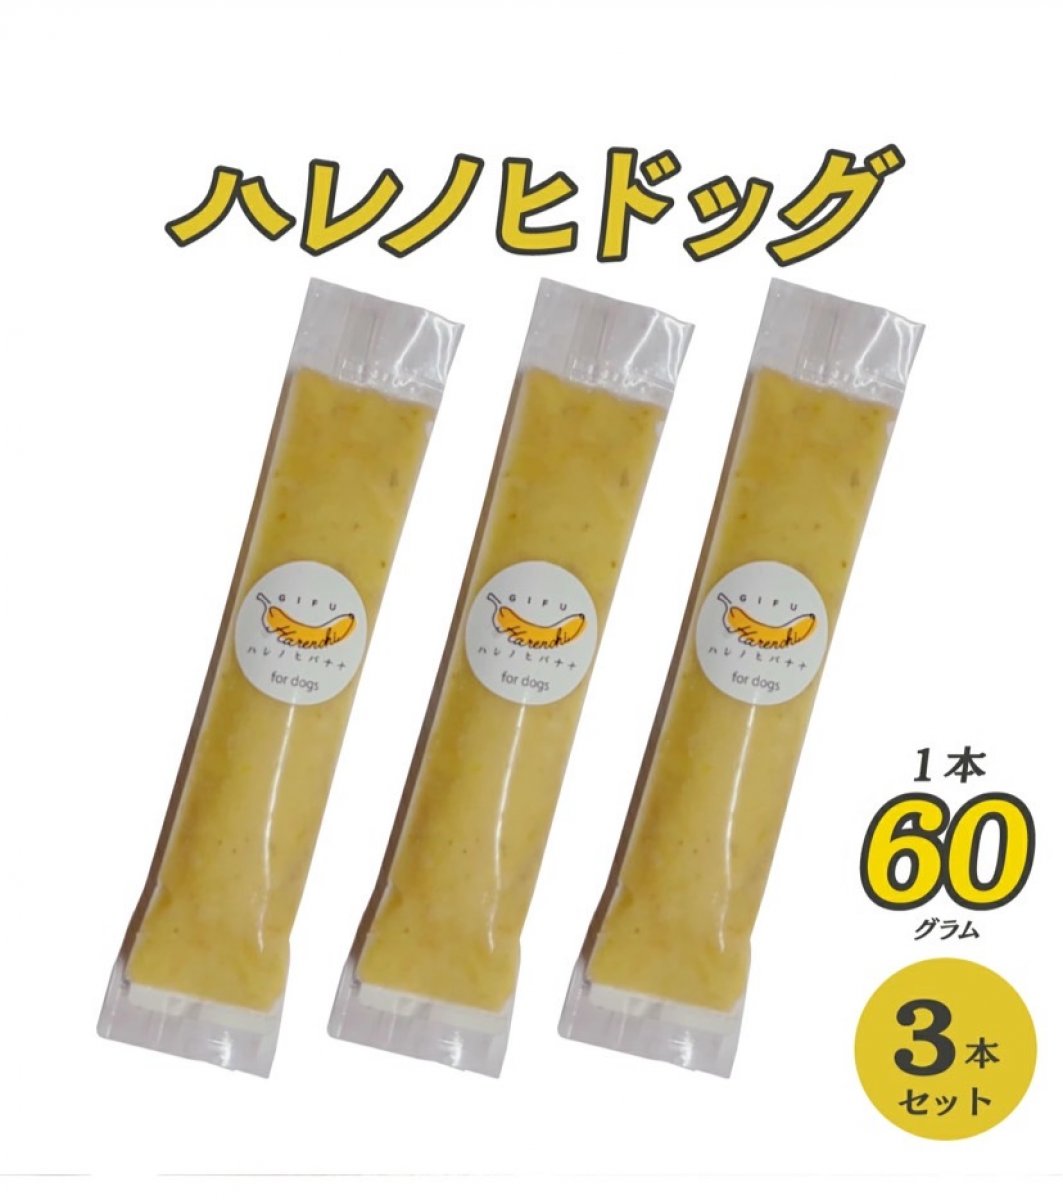 【国産・無添加・無農薬】 ハレノヒハレバナナ for DOG 60g×3本セット